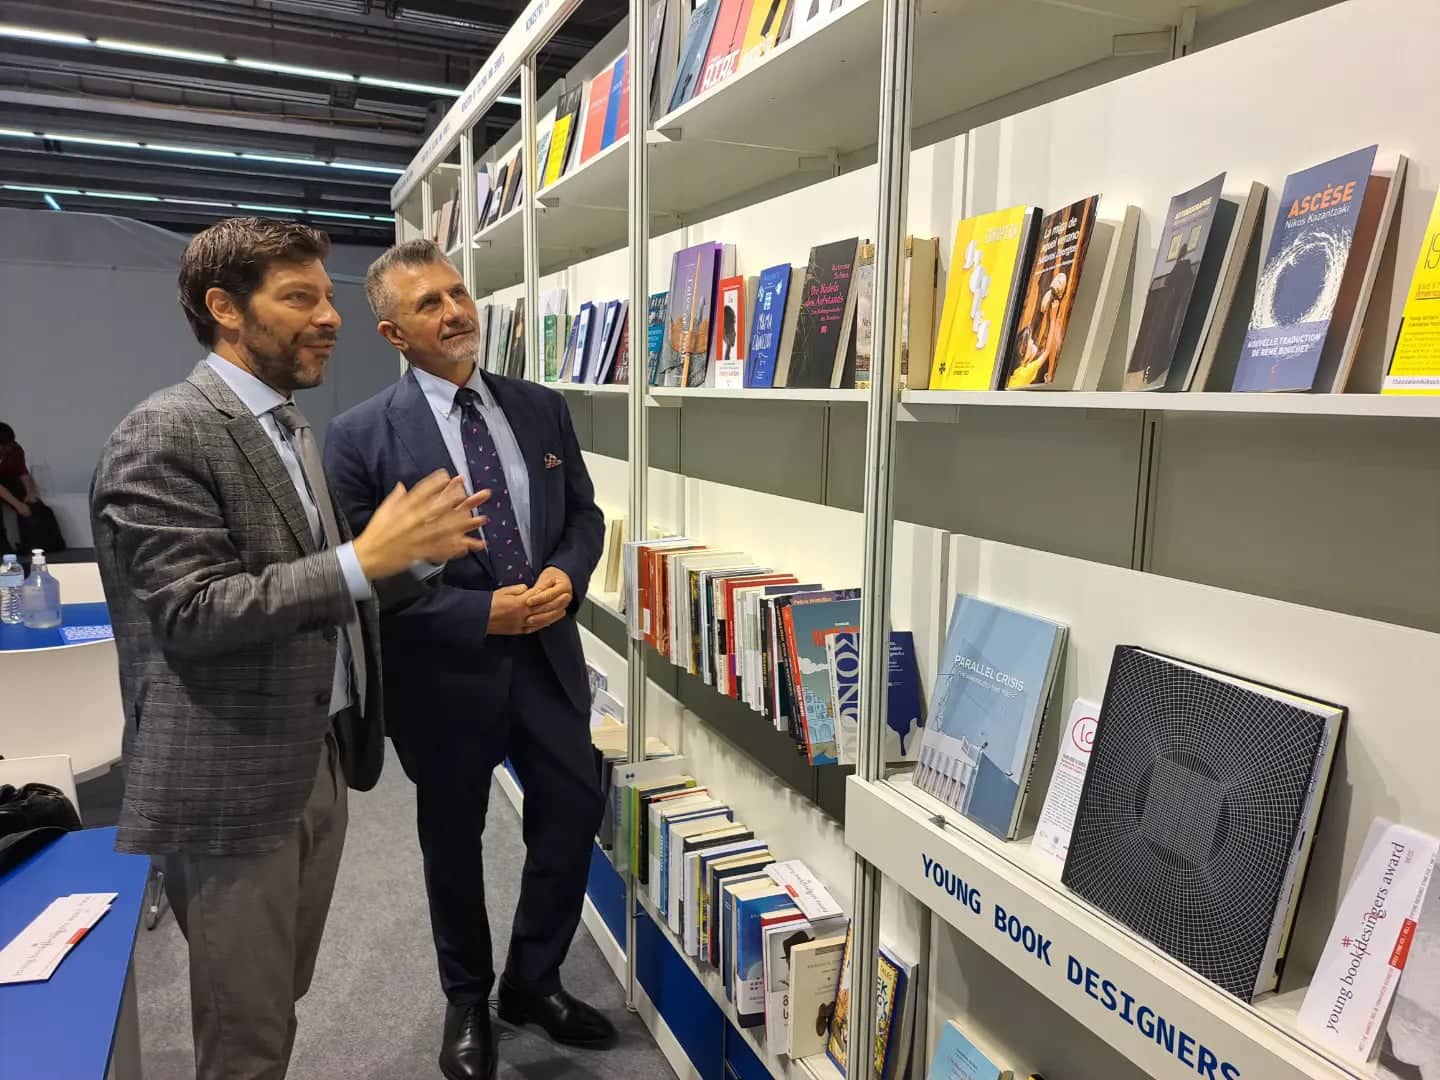 Ο Υφυπουργός Πολιτισμού Δρ Γιάννης Τουμαζής συναντήθηκε με τον κ. Νικόλα Γιατρομανωλάκη, Υφυπουργό Σύγχρονου Πολιτισμού Ελλάδας